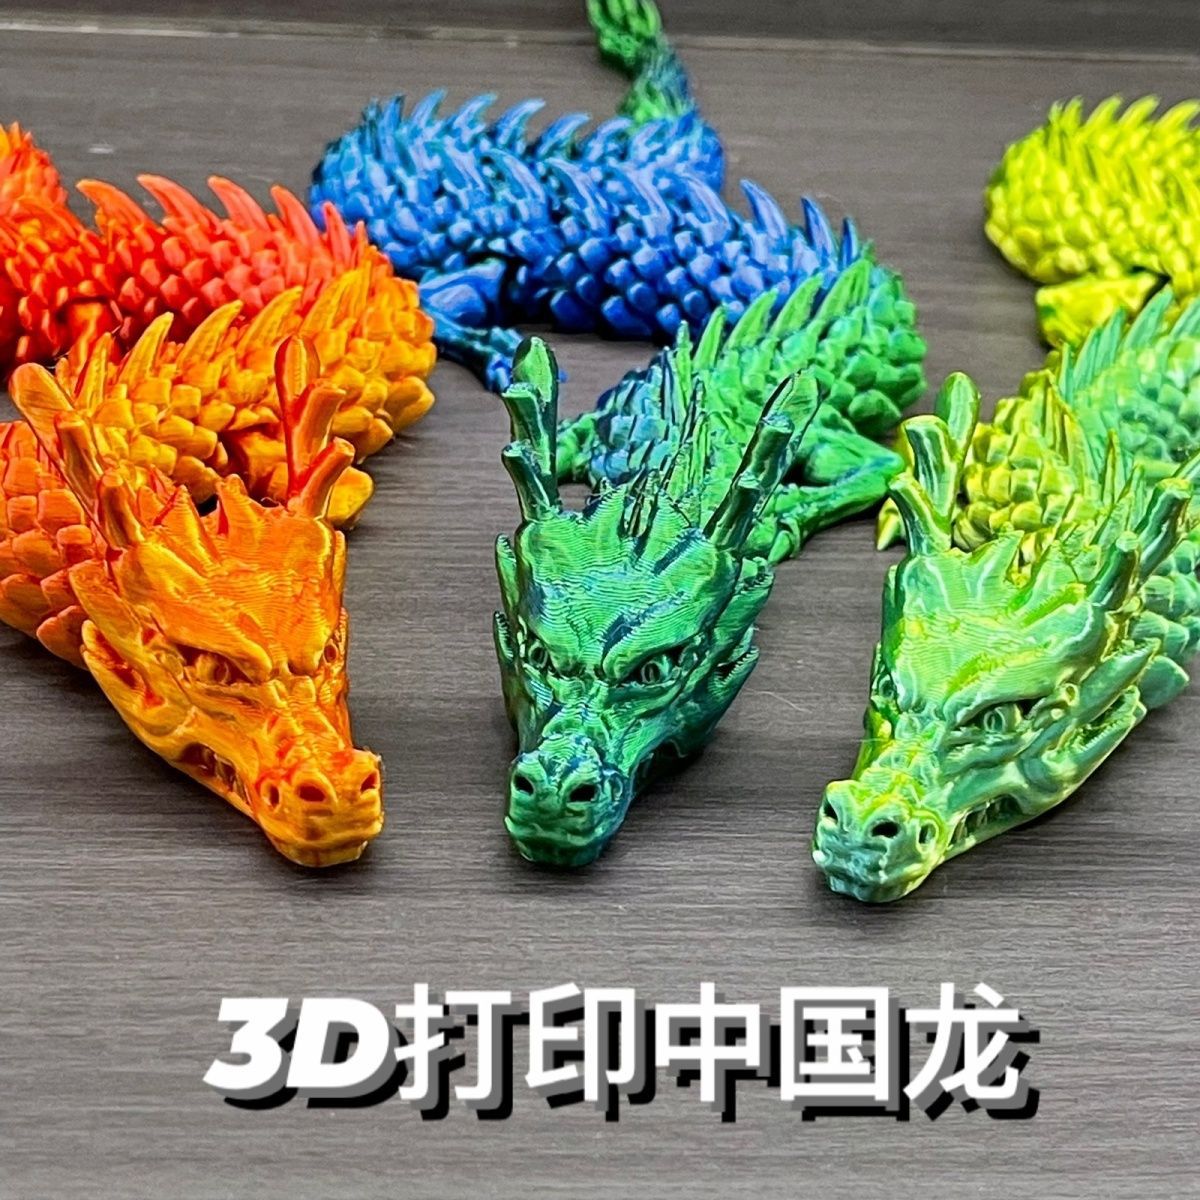 3d打印关节龙模型玩具龙中国龙鱼缸造景神龙金龙饰品网红创意手办